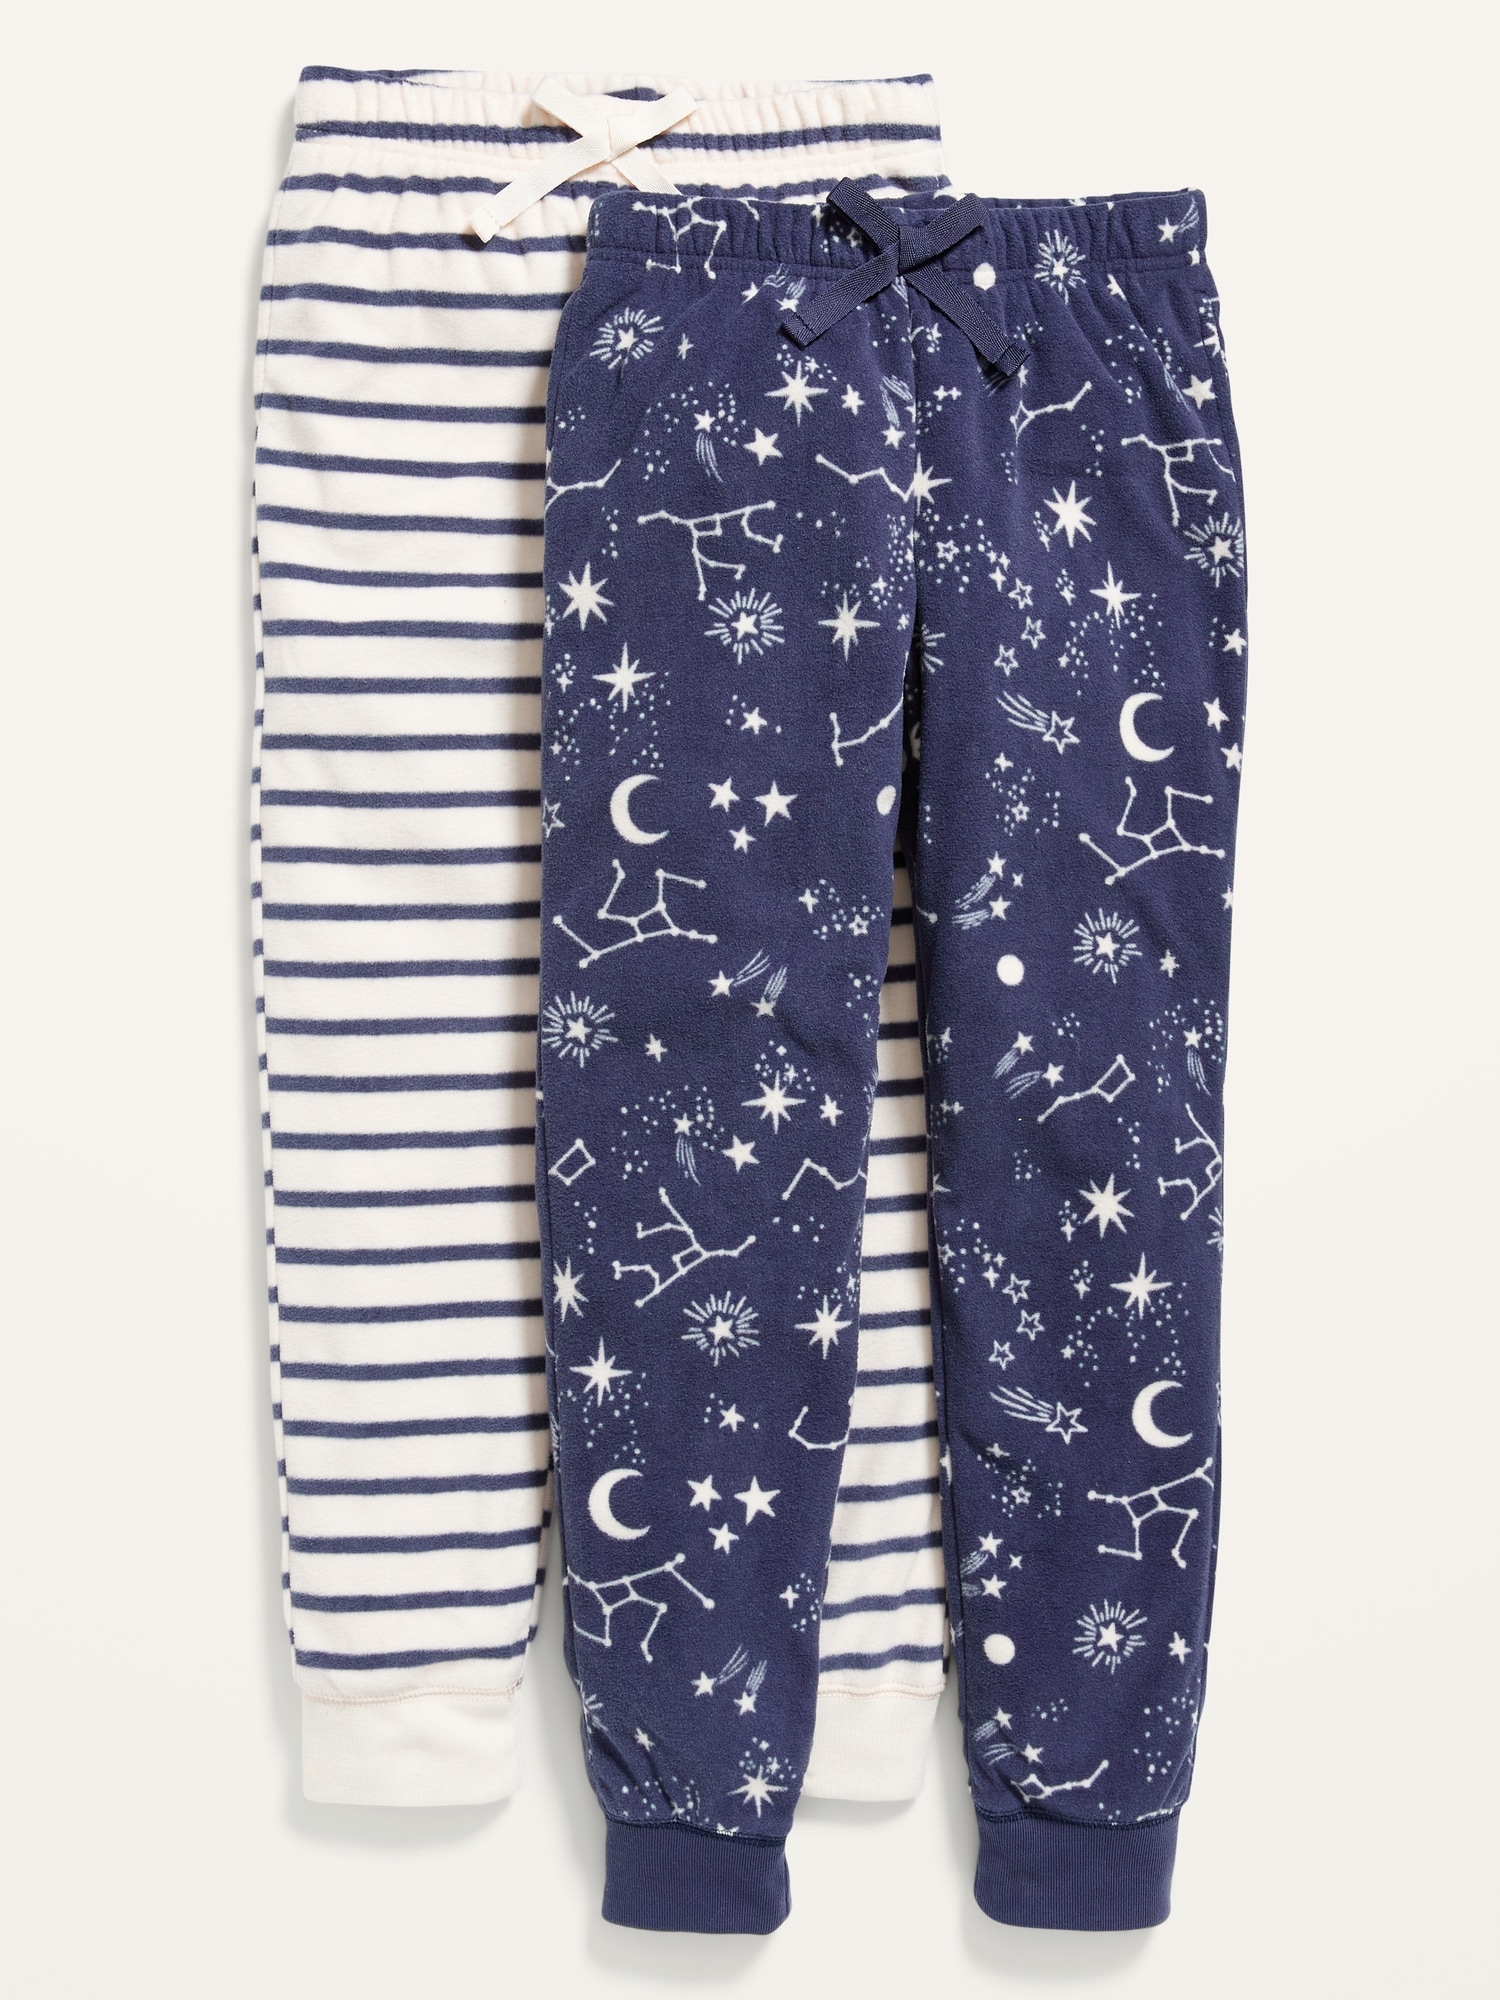 Printed Micro Fleece Pajama Jogger Pants 2-Pack for Girls